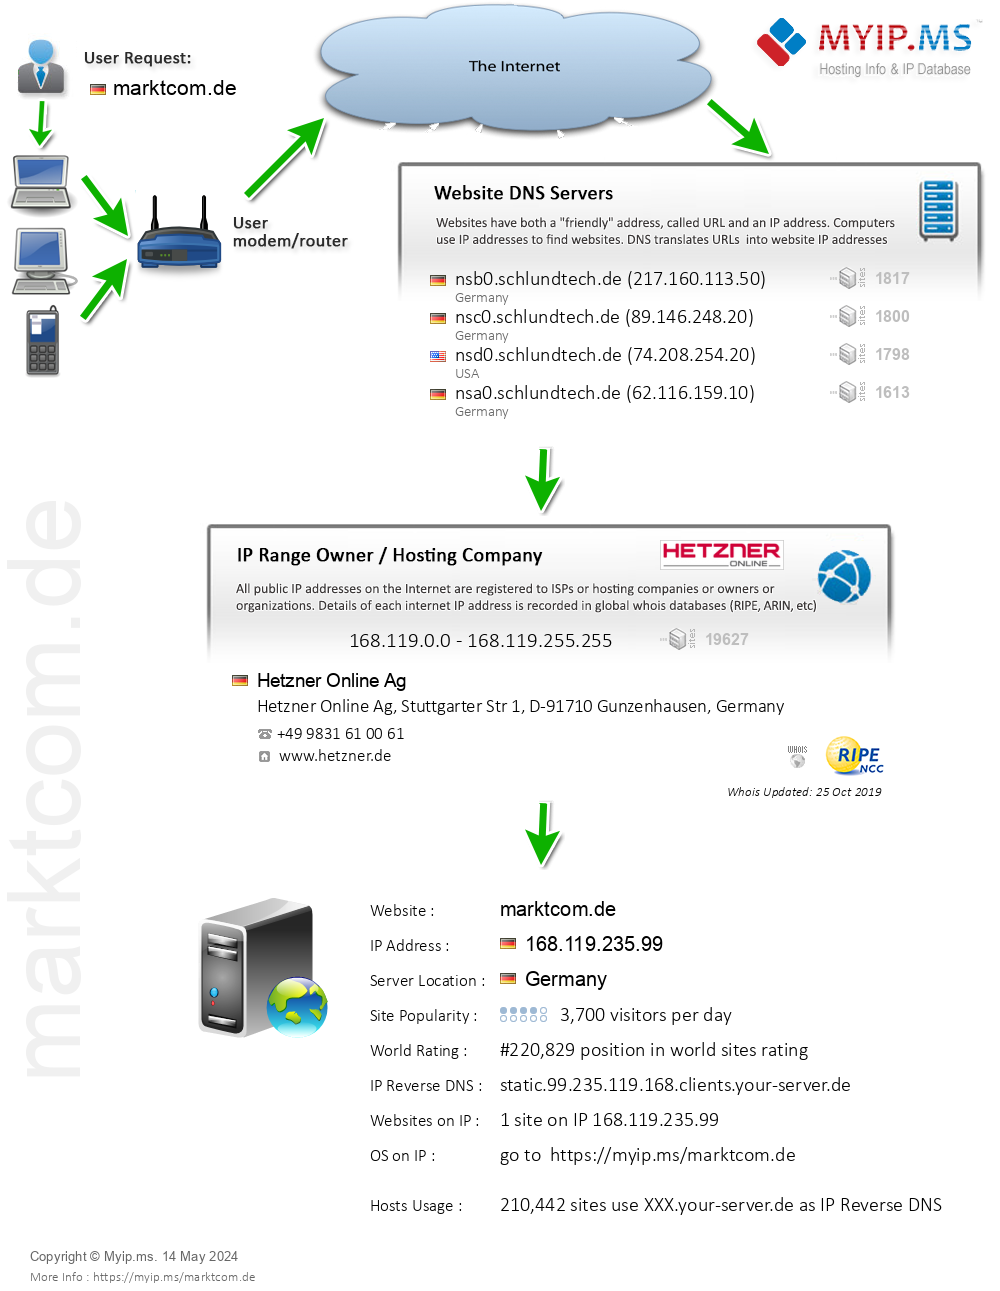 Marktcom.de - Website Hosting Visual IP Diagram